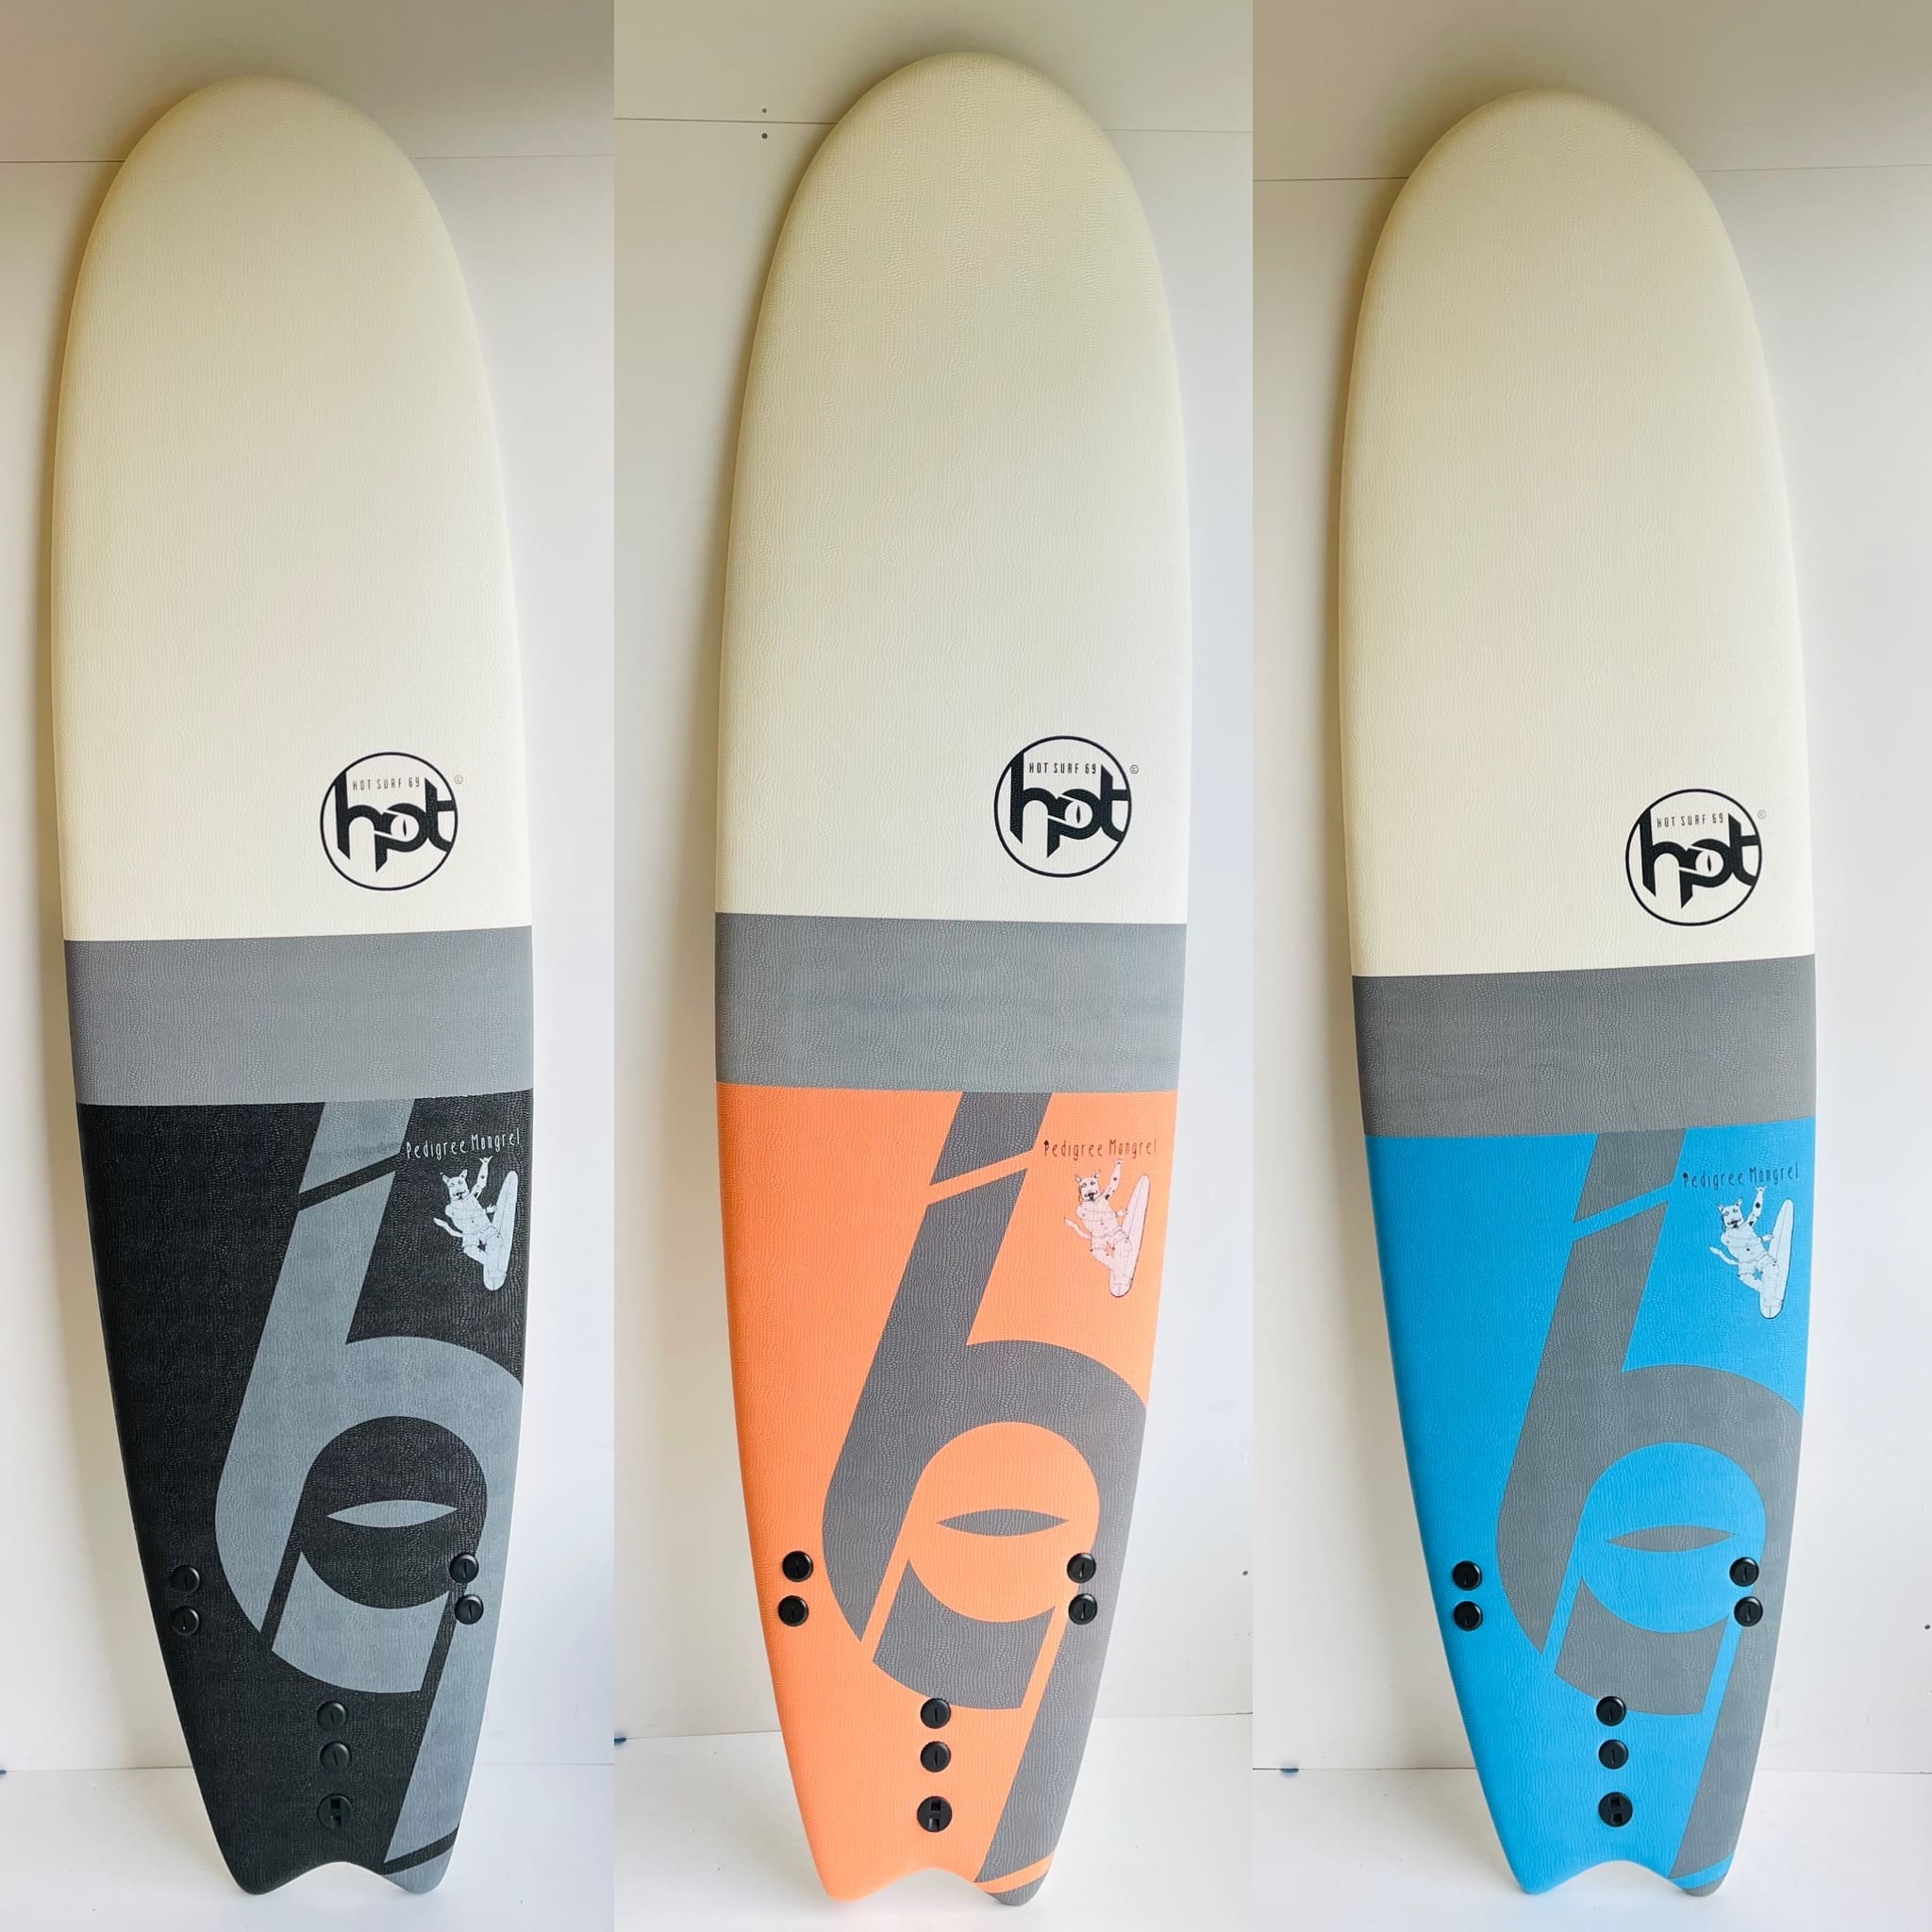 Hotsurf 69 7 0 Softboard Beginners Surfboard Package Deal